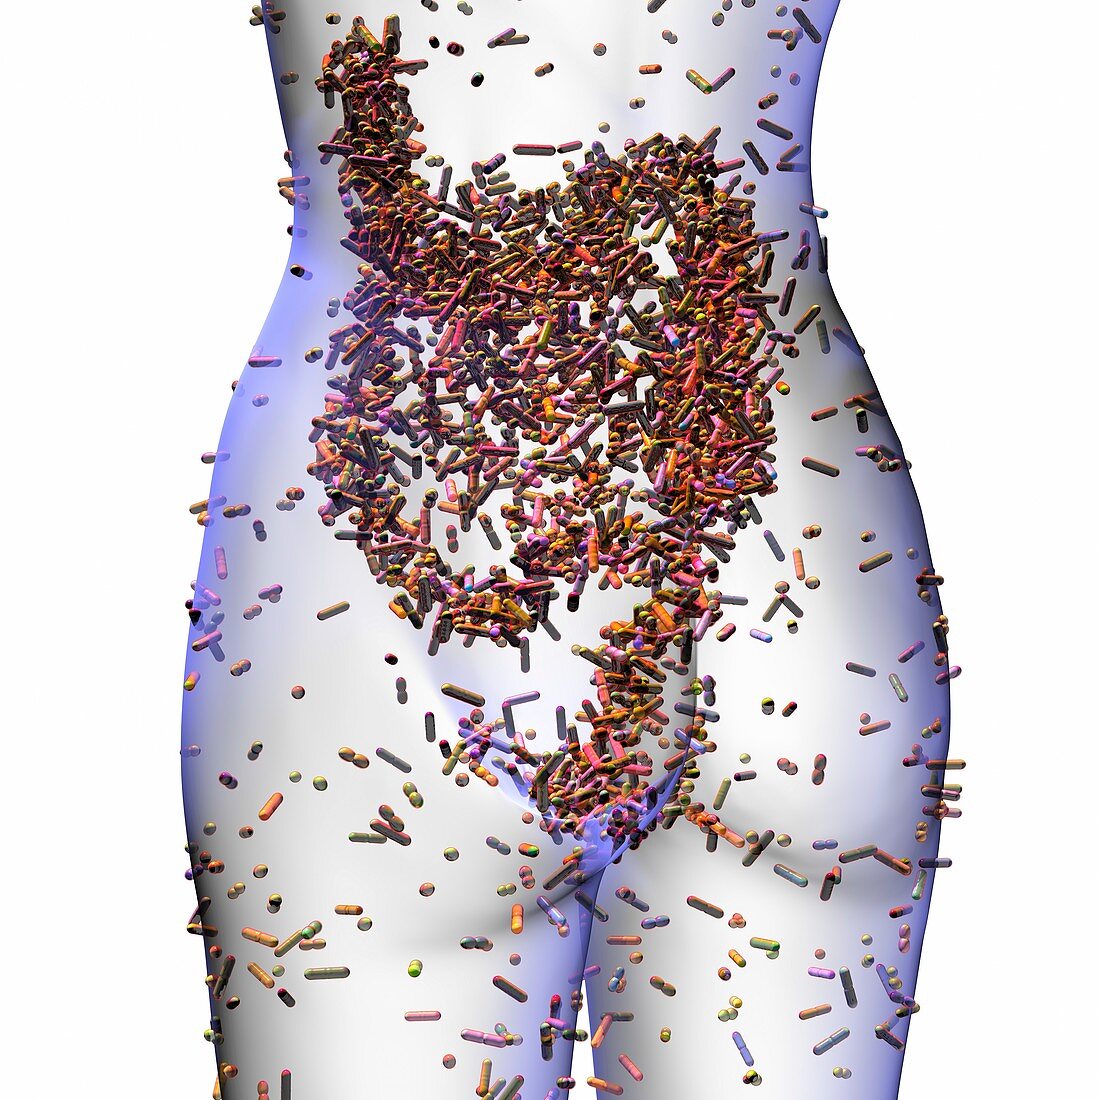 Human microbiome, conceptual image